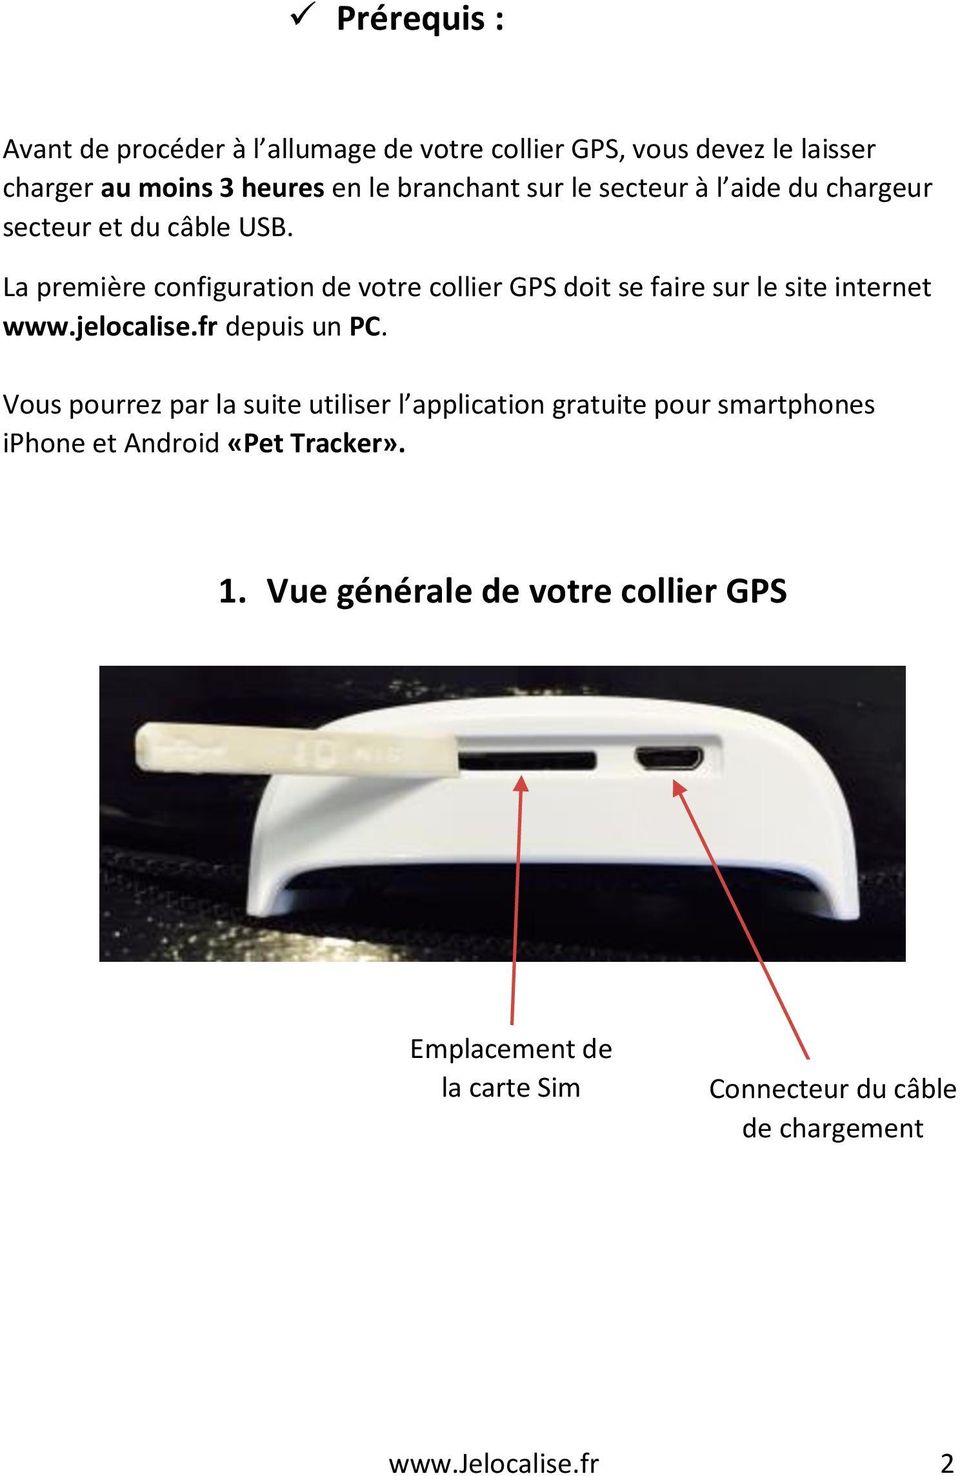 La première configuration de votre collier GPS doit se faire sur le site internet www.jelocalise.fr depuis un PC.